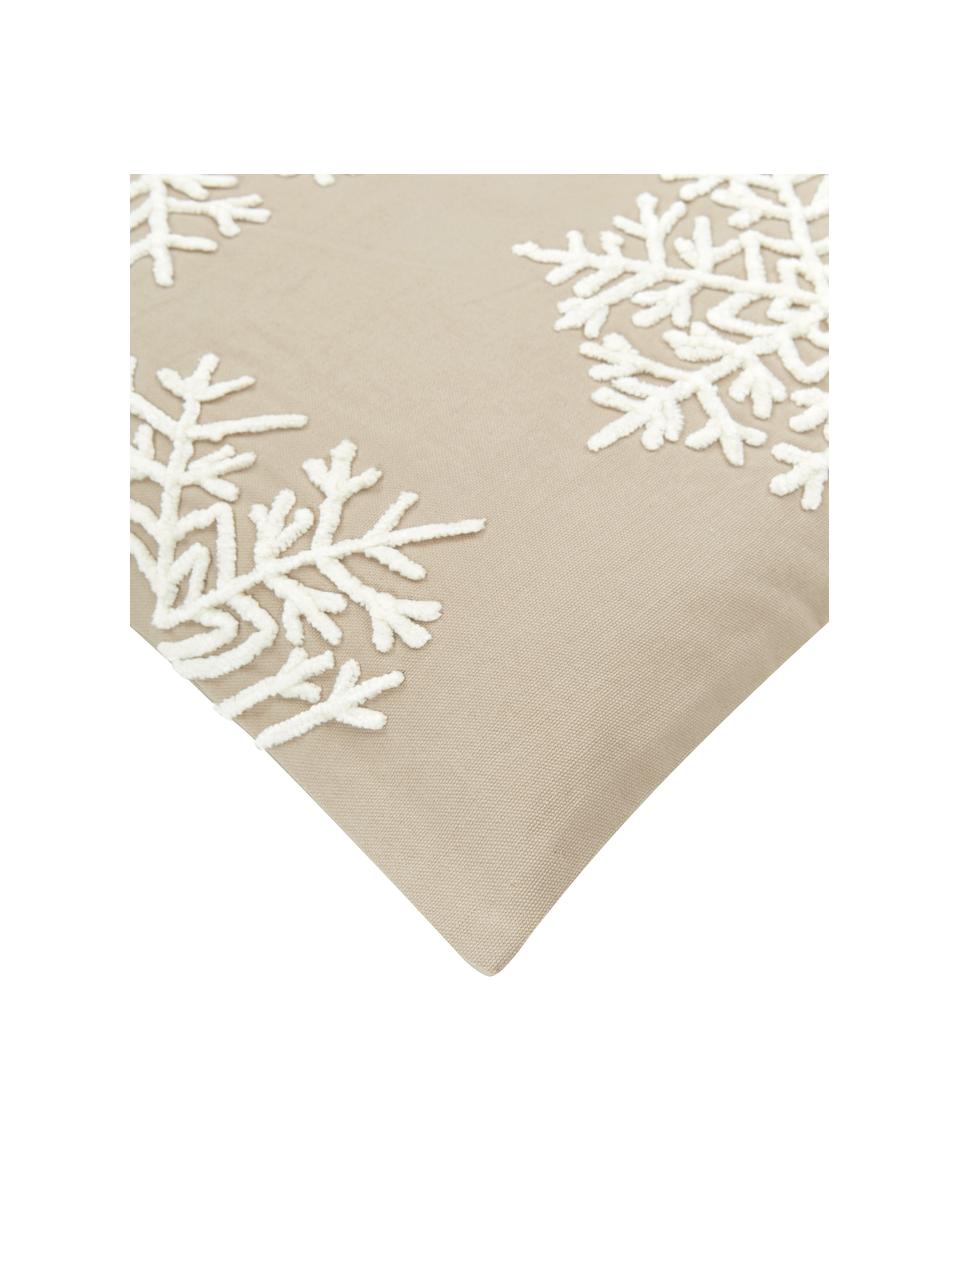 Geborduurde kussenhoes Snowflake in taupe, 100% katoen, Taupe, B 45 x L 45 cm